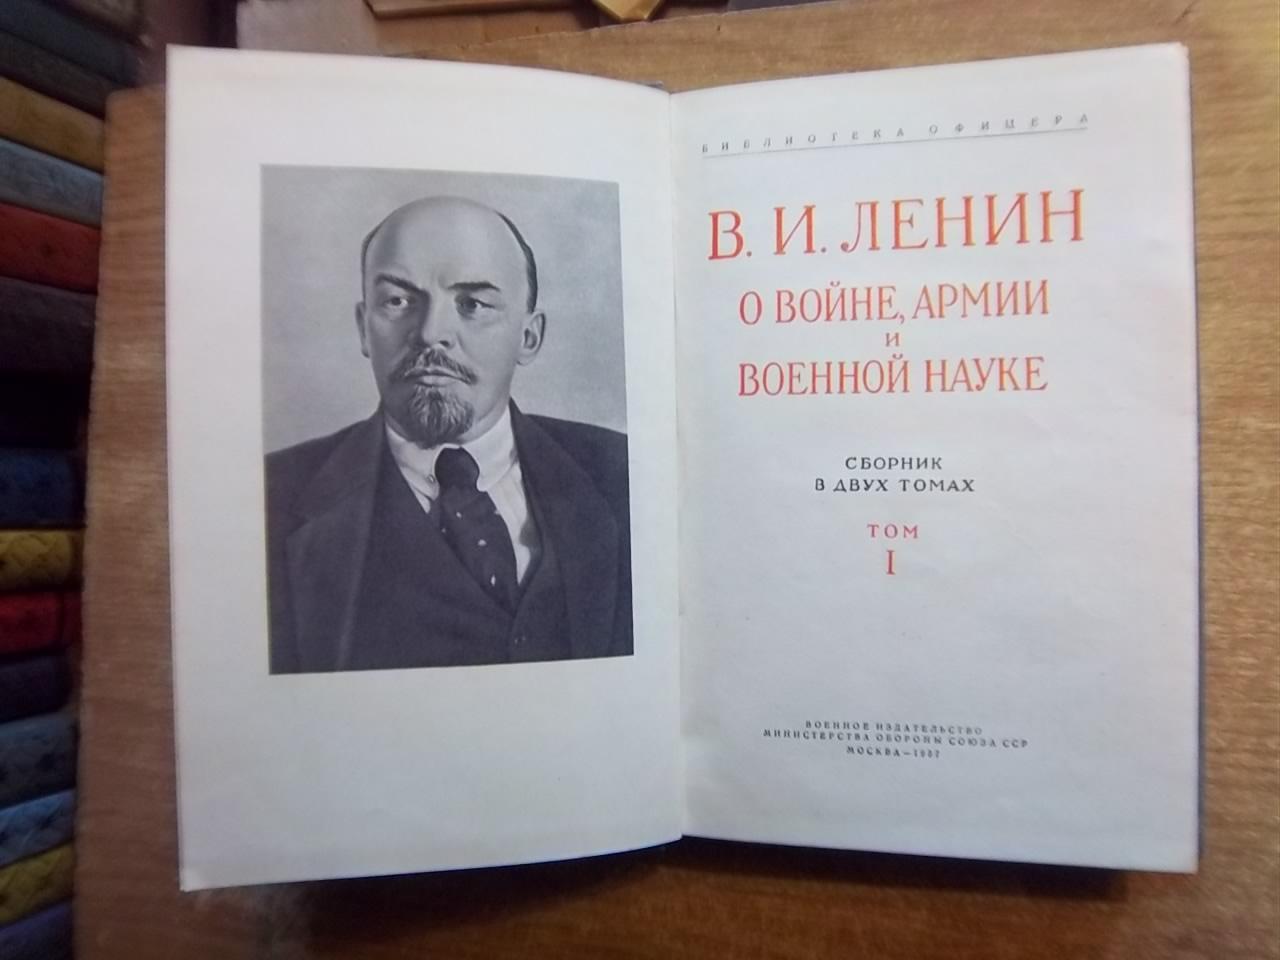 Ленин В.И. о войне, армии и военной науке. «Библиотека офицера» 2